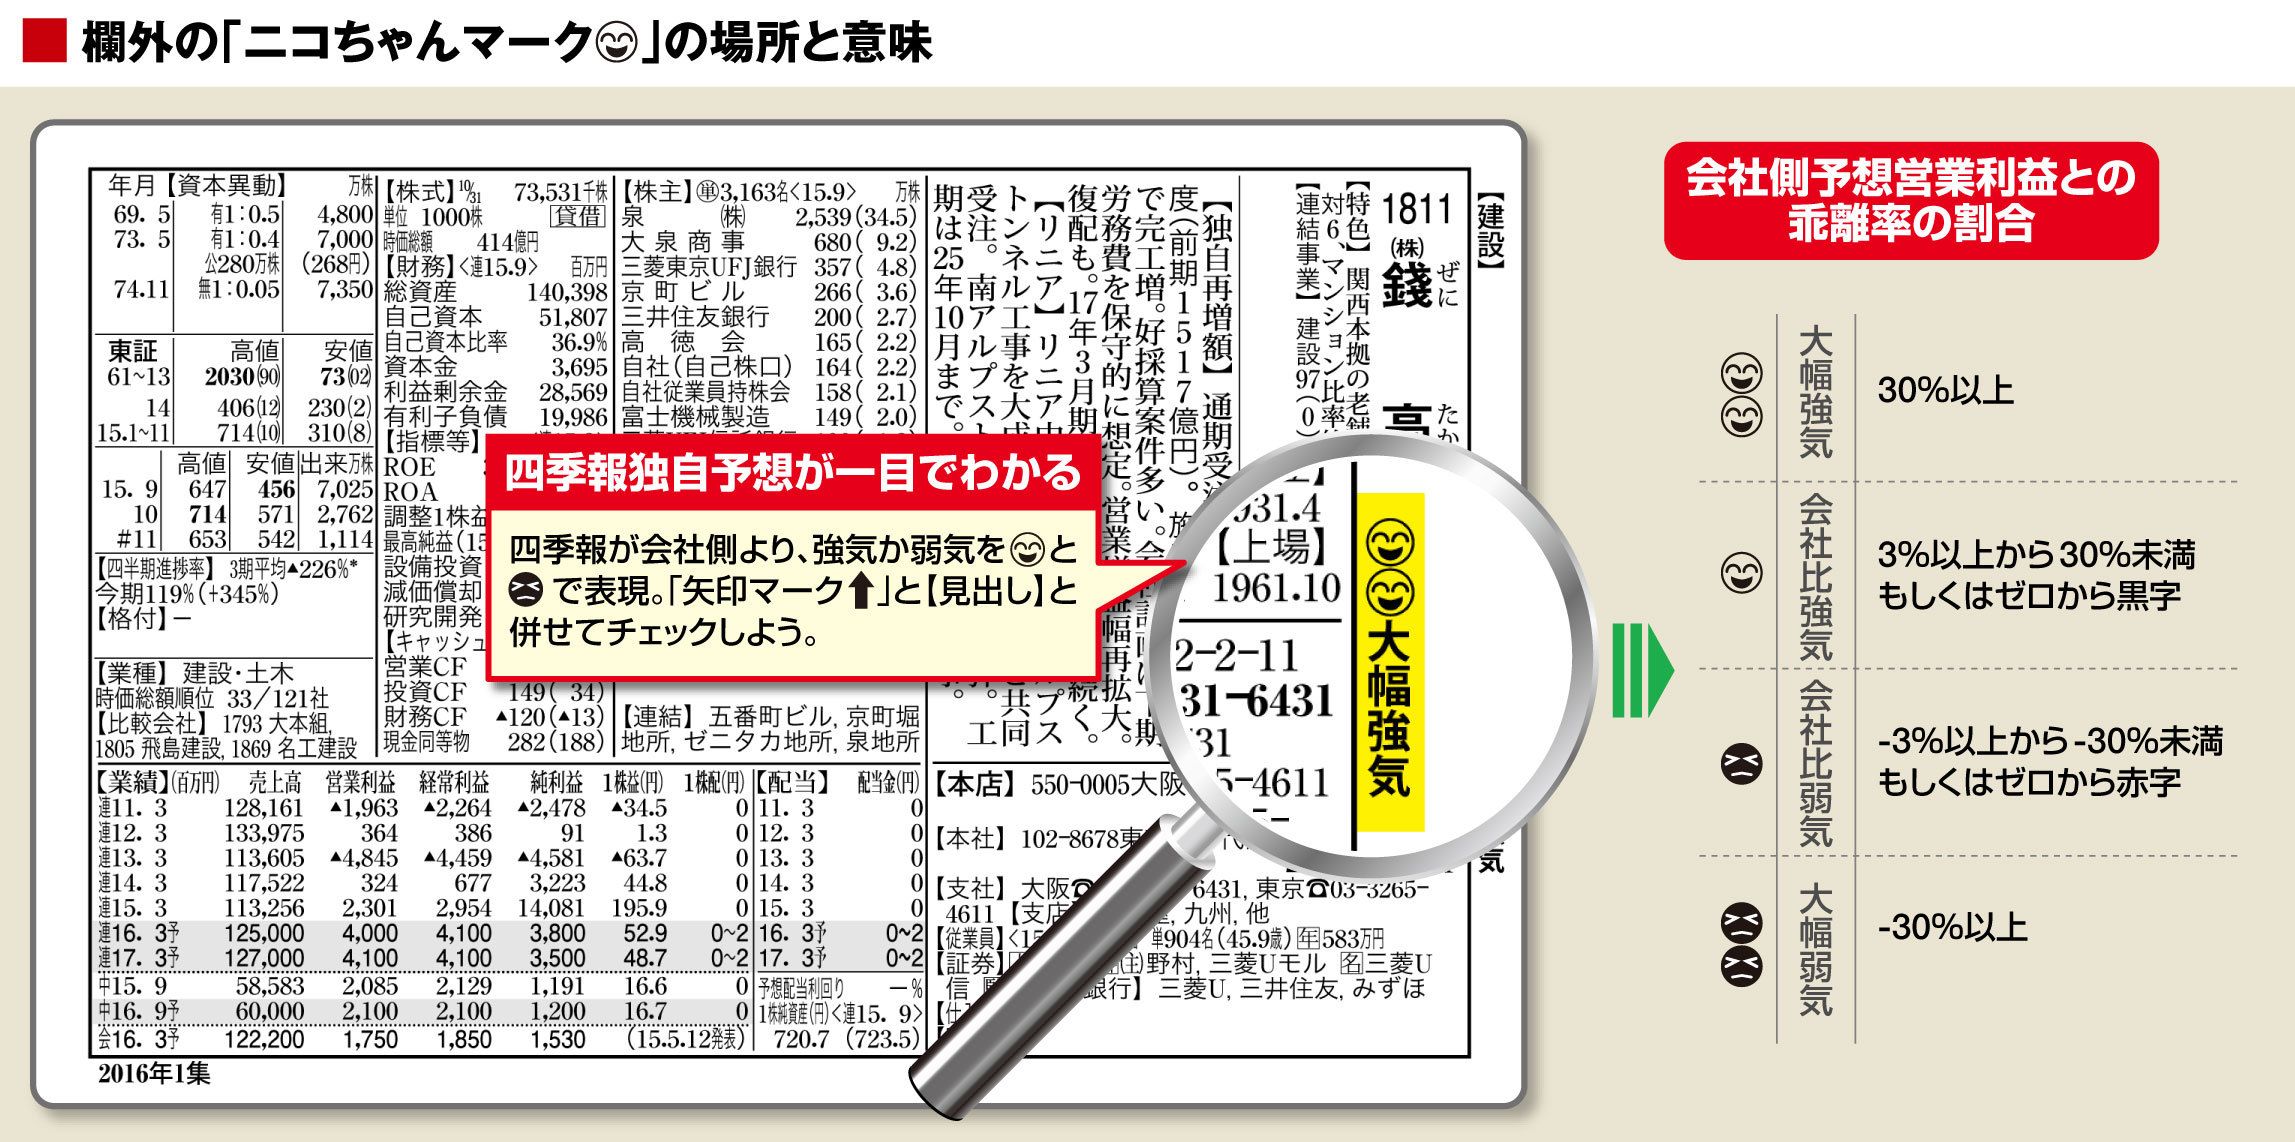 ニコちゃんマークは 増額修正予備軍 だ 会社四季報オンライン 日本最強の株式投資情報サイト